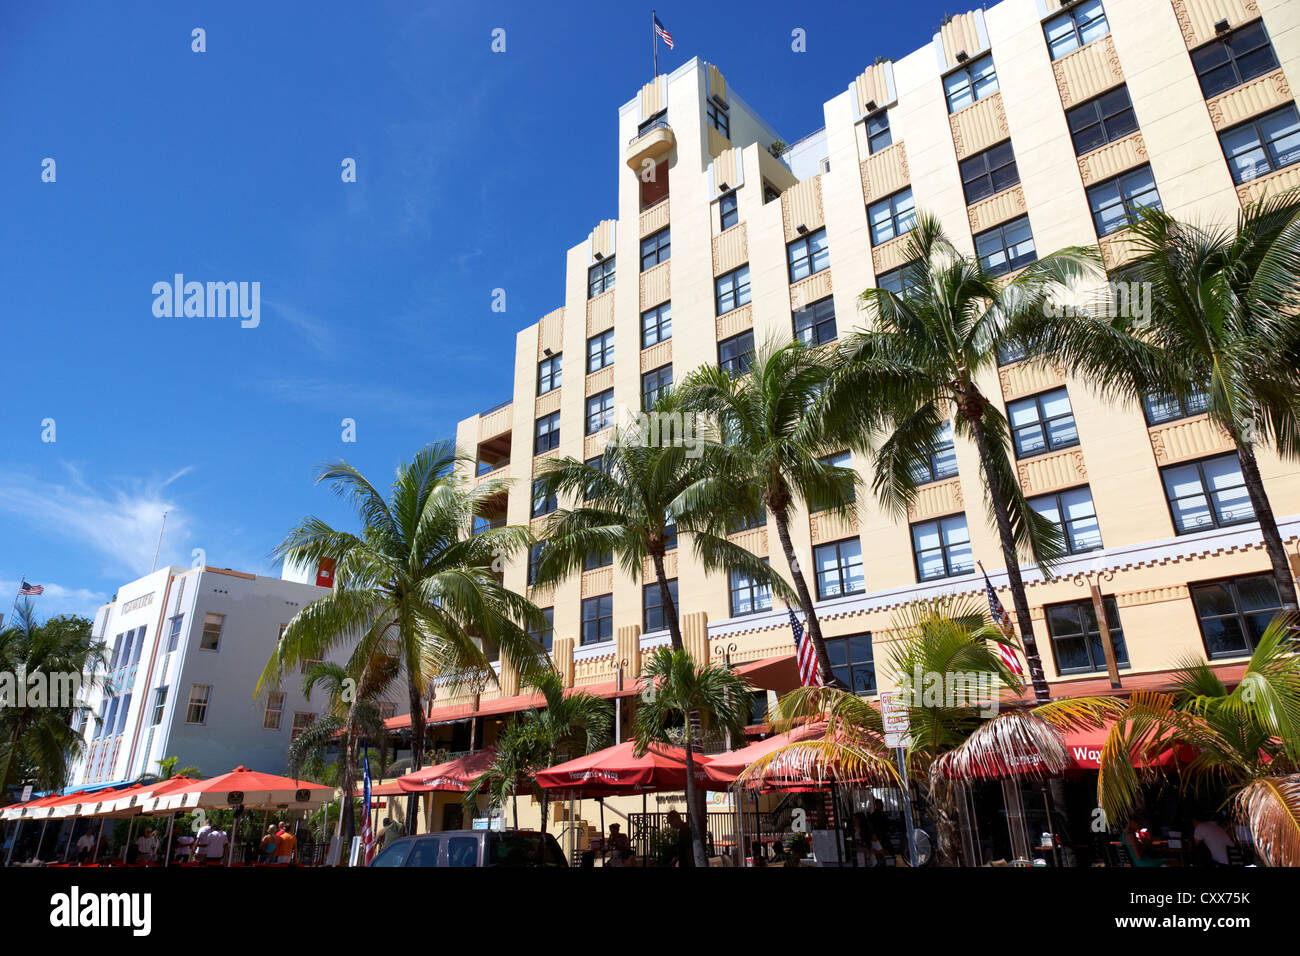 Hôtels et bars dans le quartier art déco historique Ocean drive Miami South beach floride usa Banque D'Images